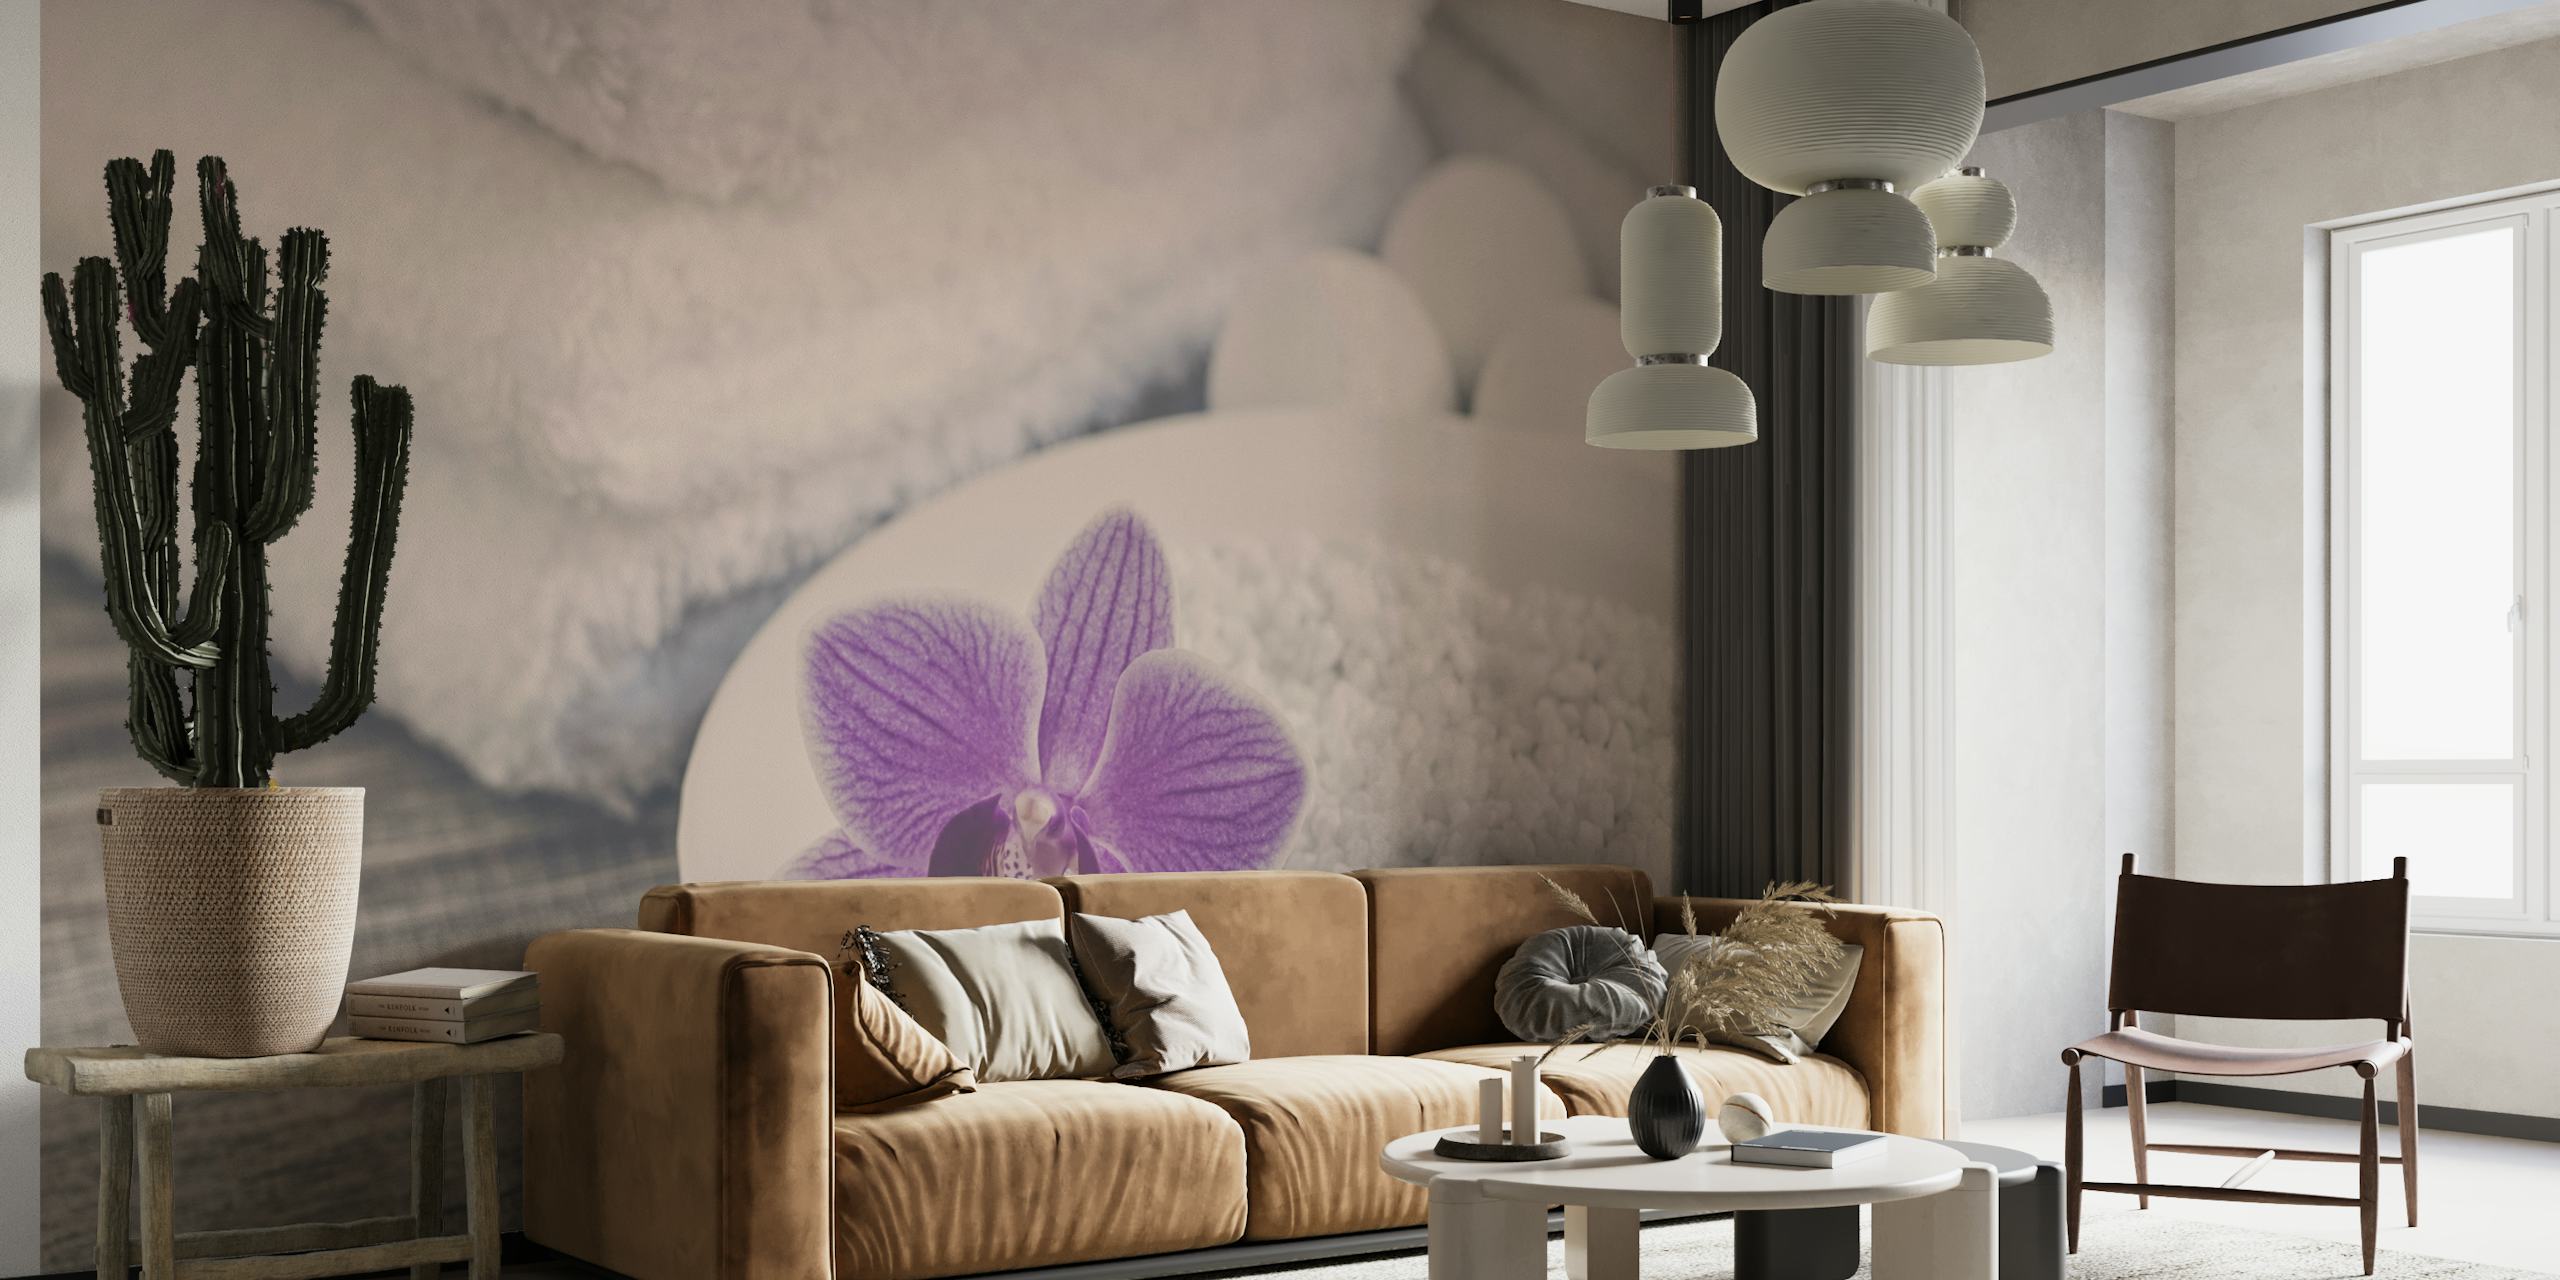 Fototapete mit einer lila Orchidee auf weißem Sand, flauschige Handtücher im Hintergrund